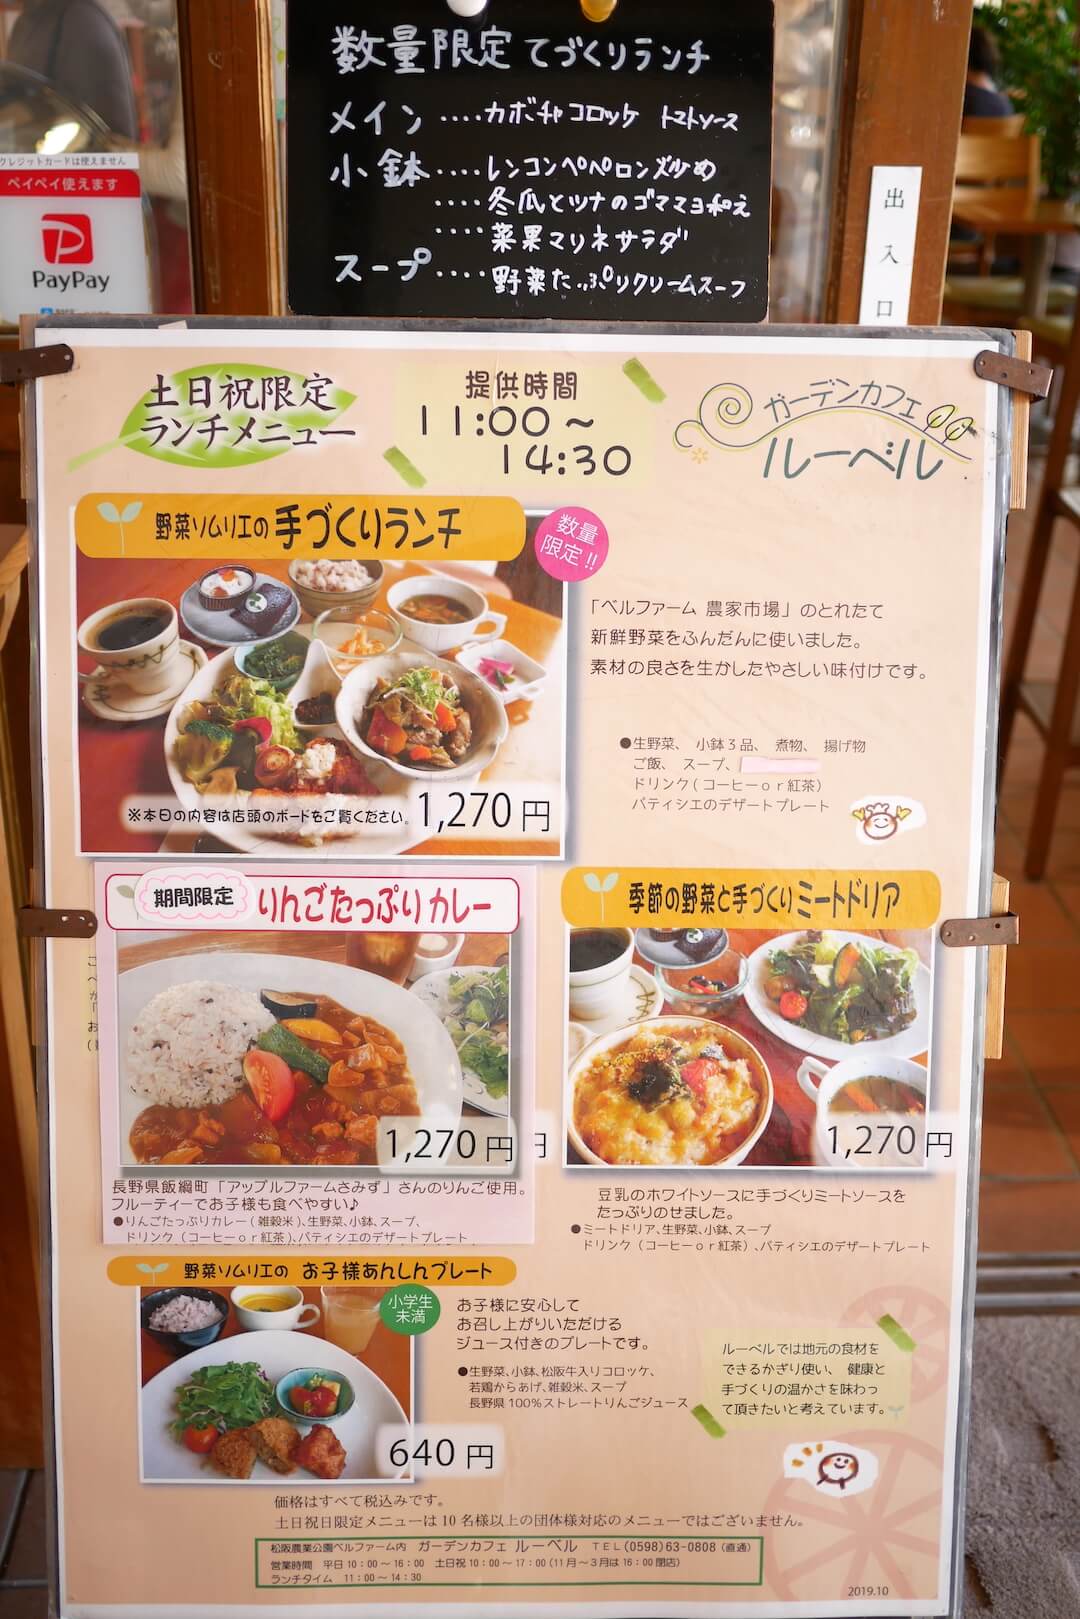 ガーデンカフェ ルーベル 松阪農業公園 三重カフェ 松阪市 ランチ 野菜